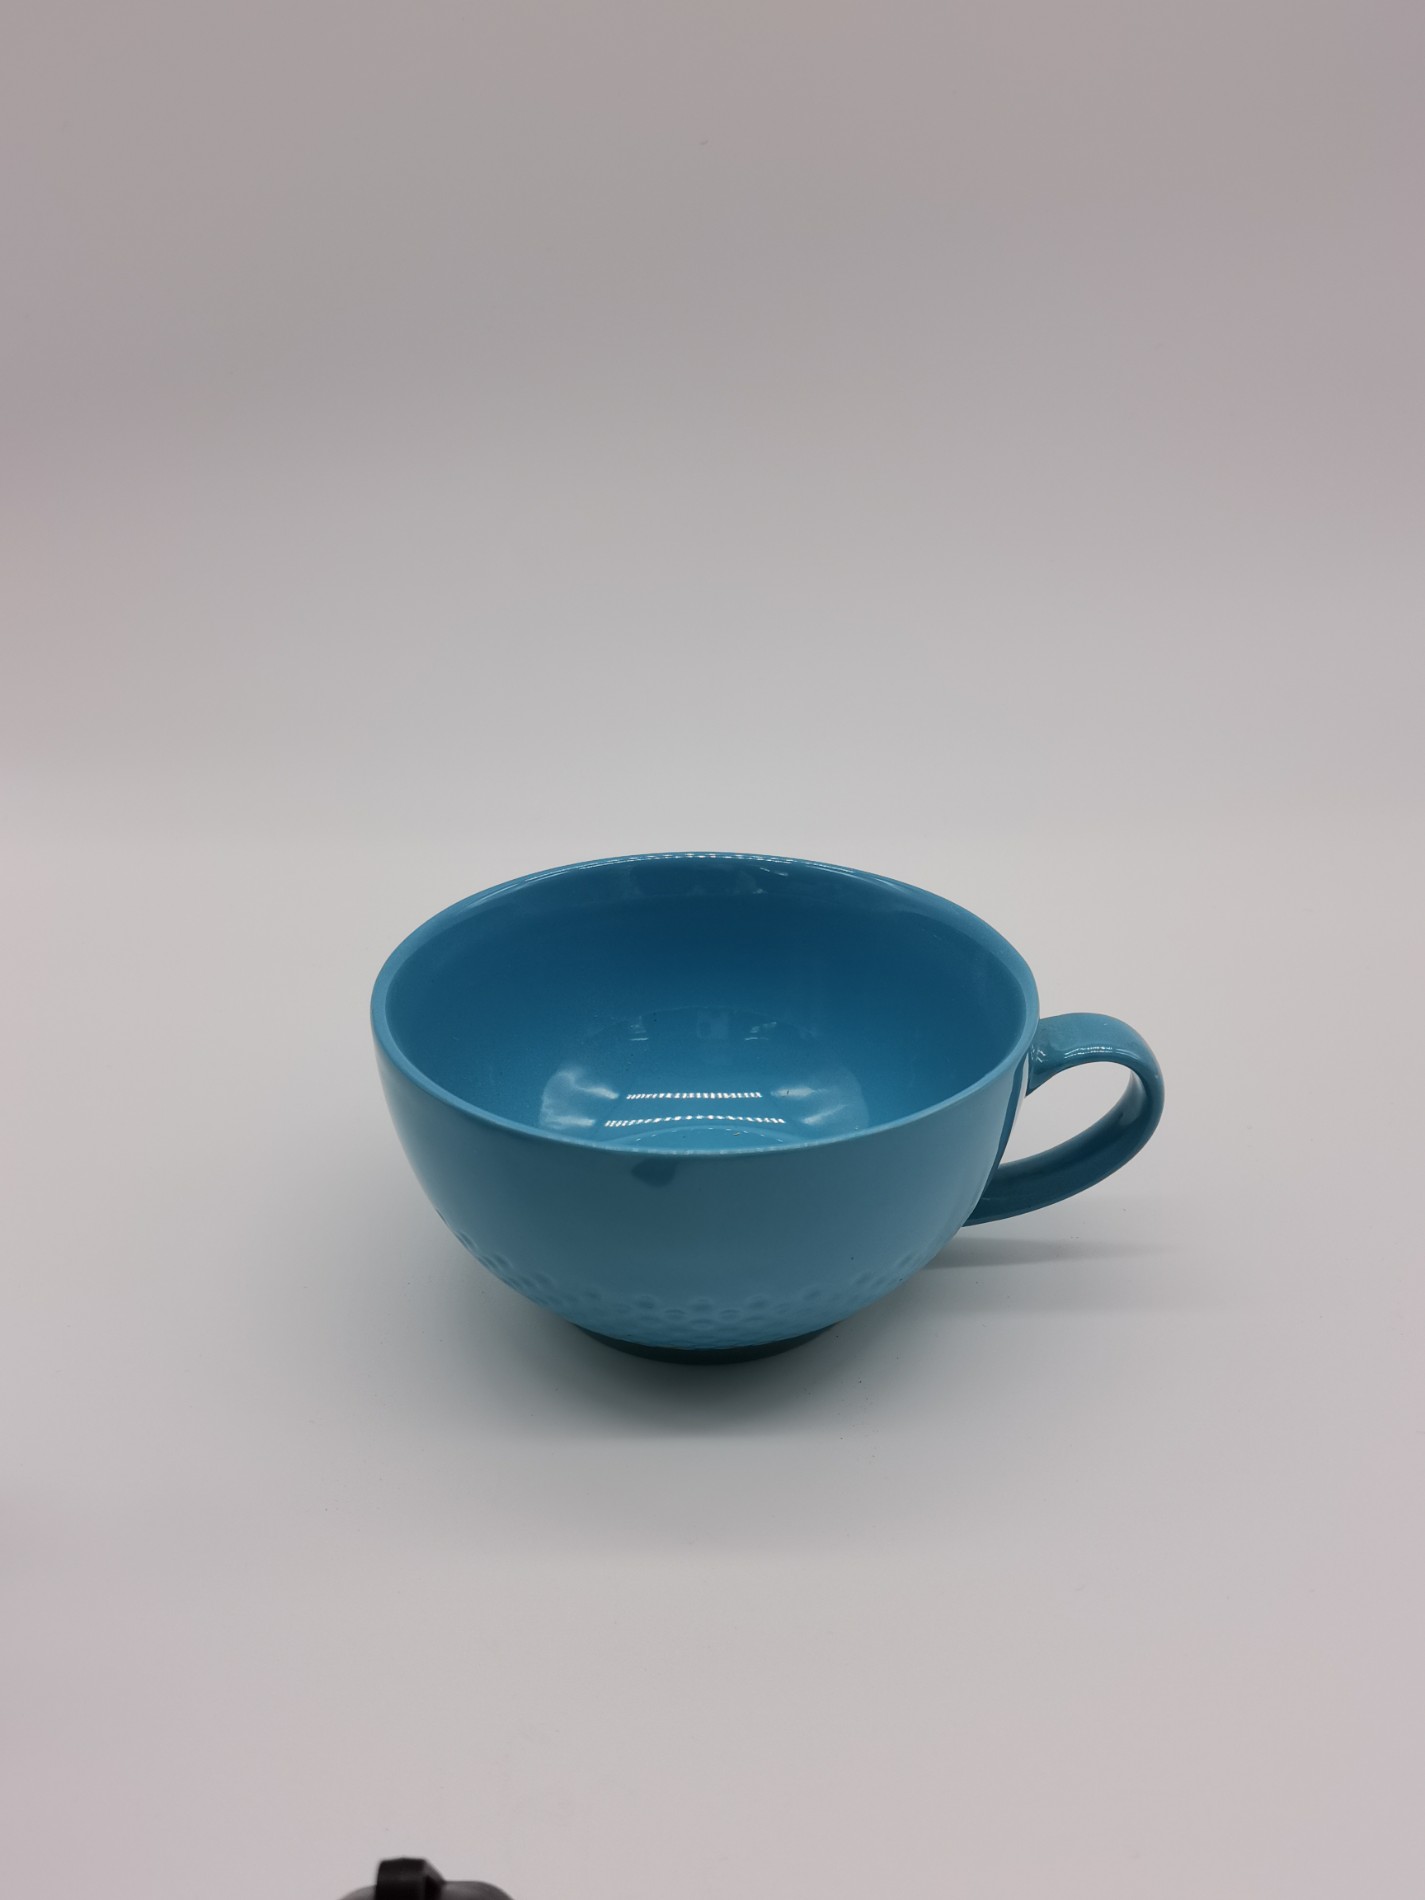 Heat Resistant Ceramic Teapot